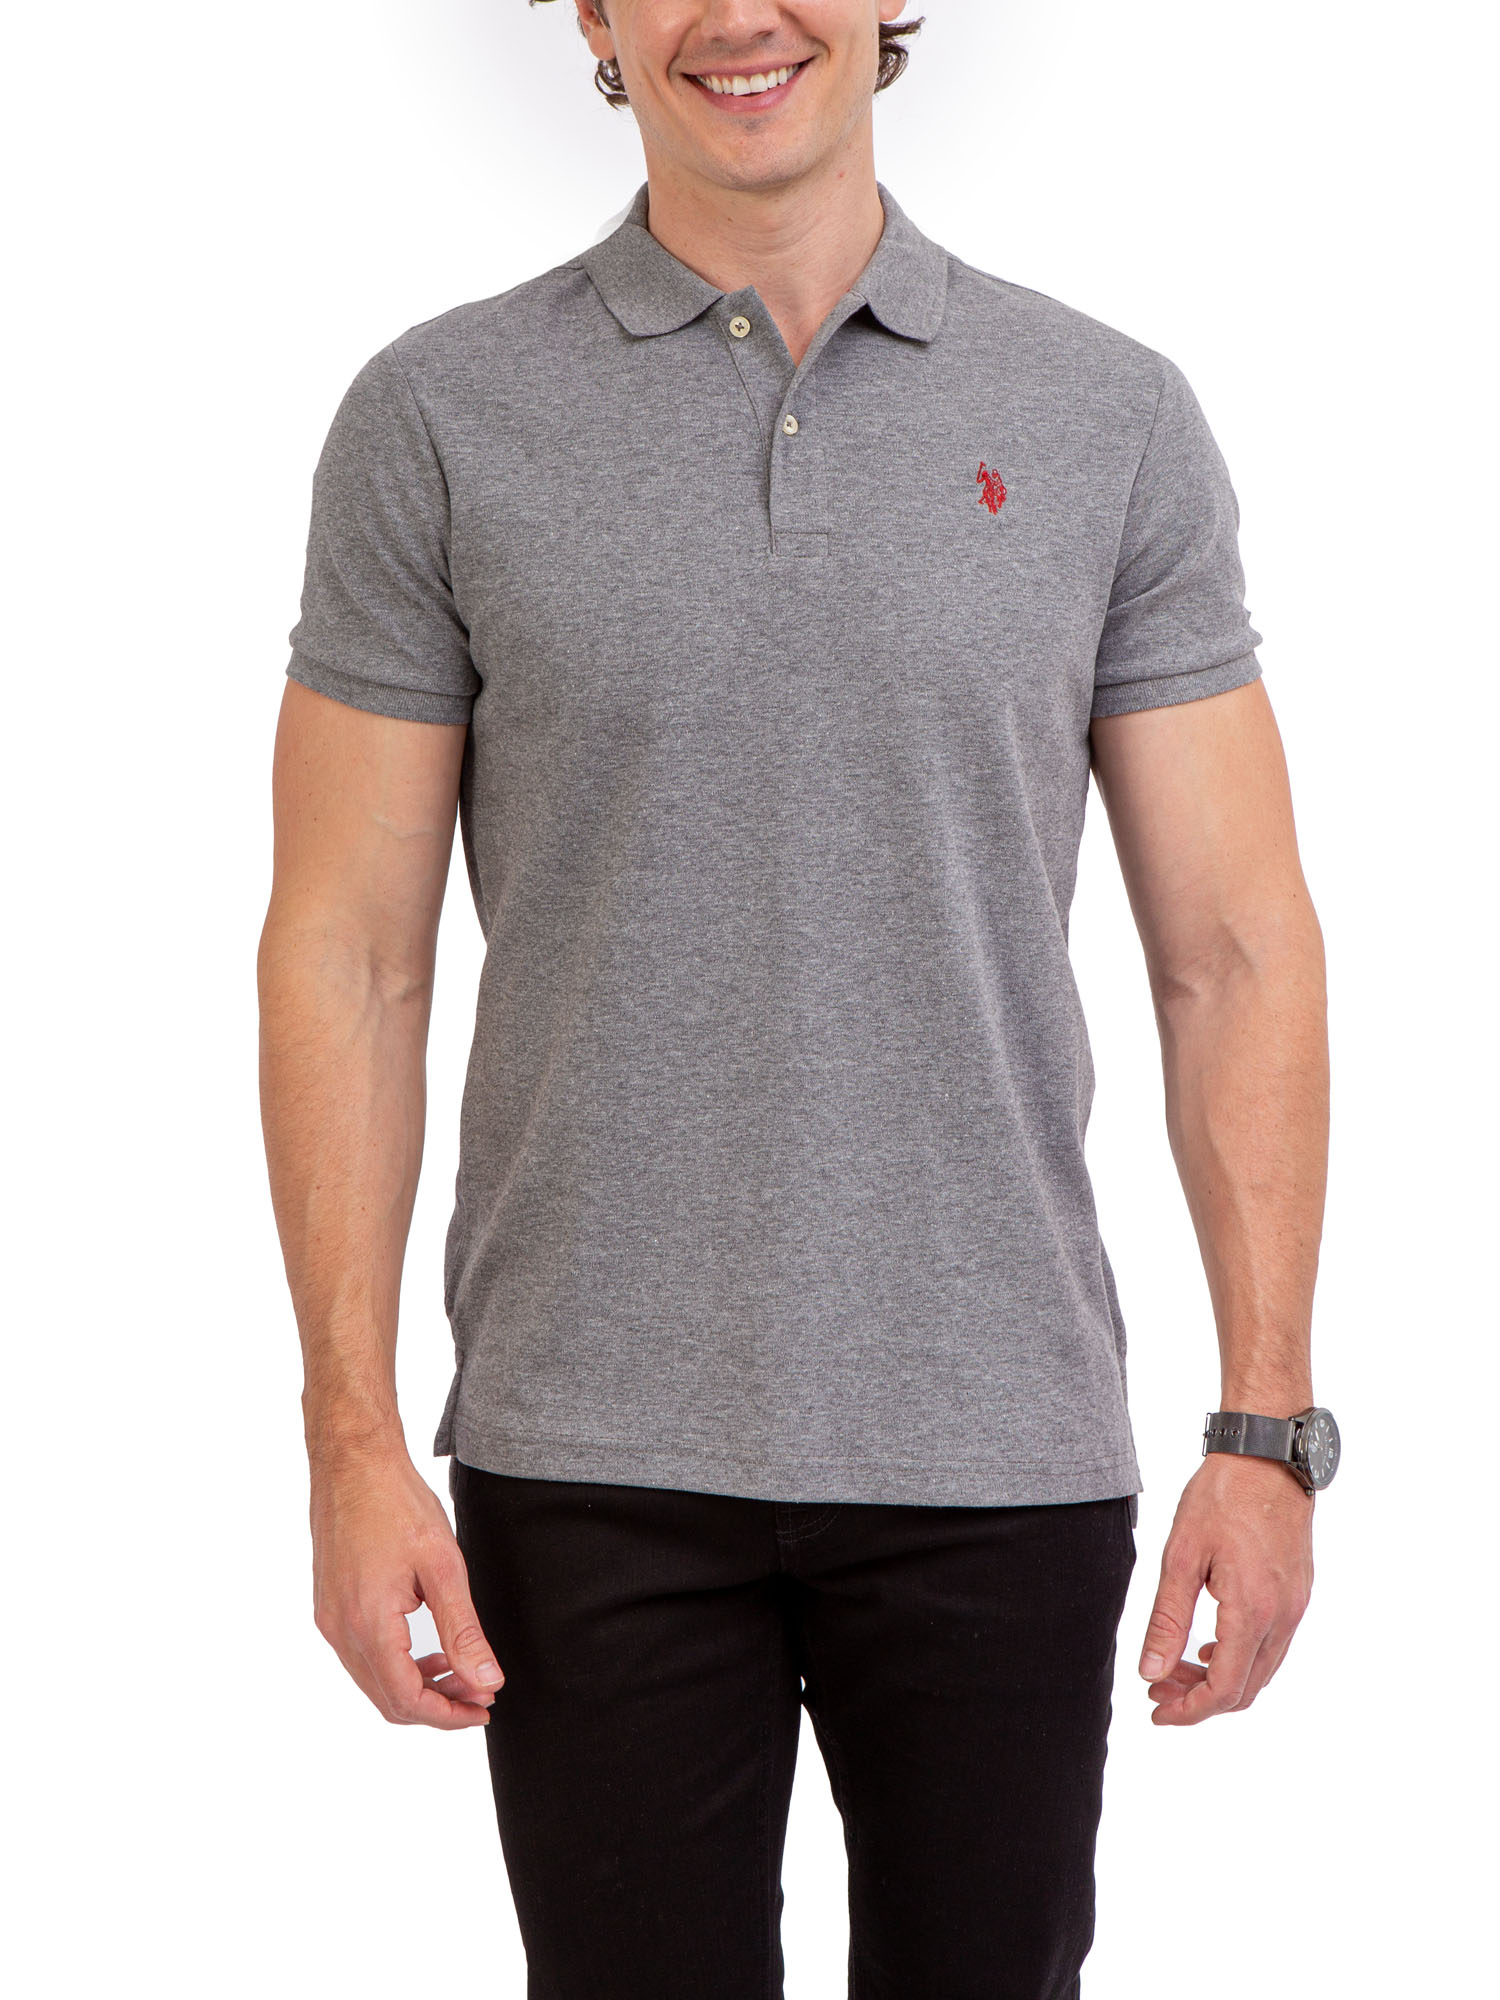 U.S. Polo Assn. Men's Interlock Polo Shirt - image 1 of 4